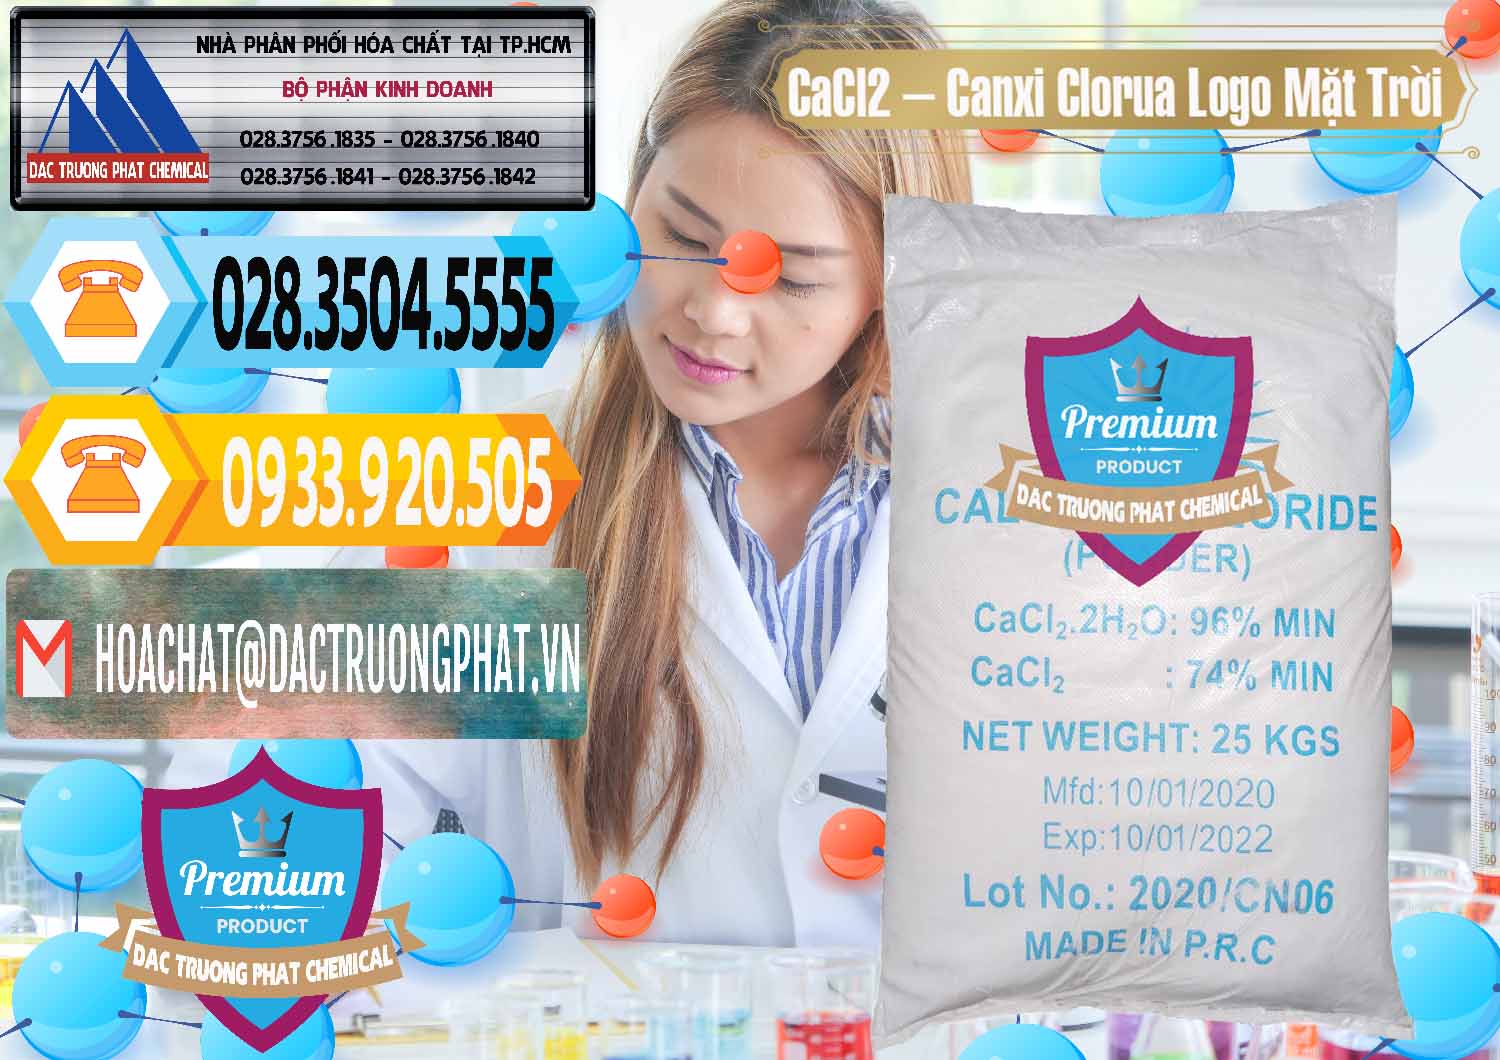 Nhà nhập khẩu & bán CaCl2 – Canxi Clorua 96% Logo Mặt Trời Trung Quốc China - 0041 - Cty bán & phân phối hóa chất tại TP.HCM - hoachattayrua.net